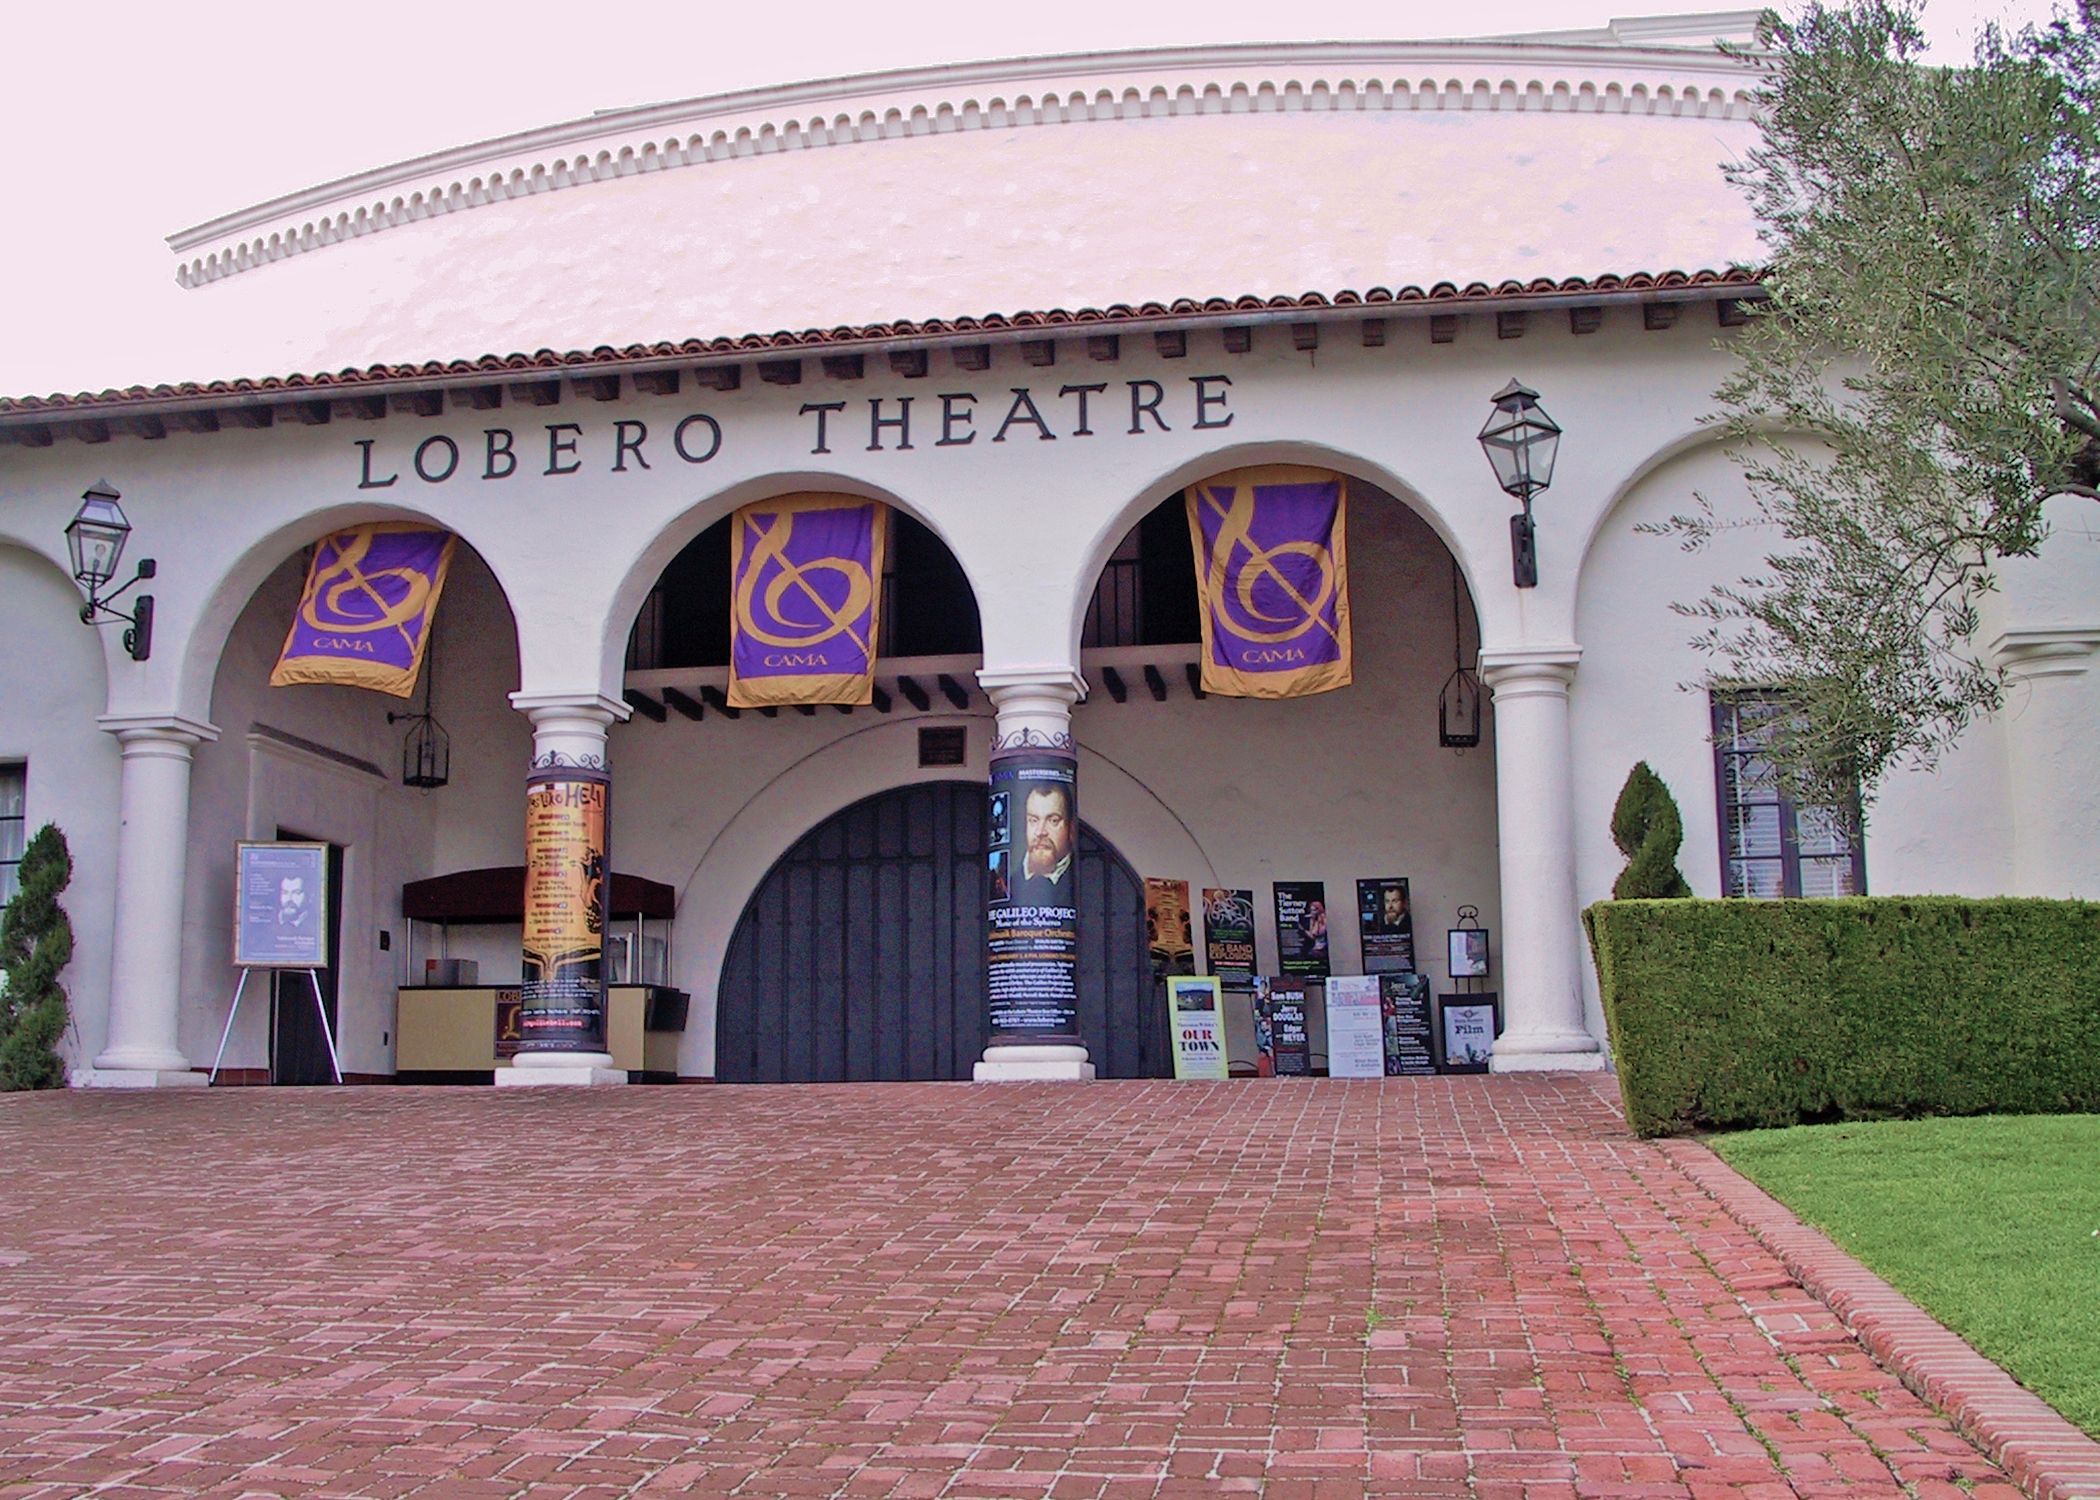 The Lobero Theater in Santa Barbara